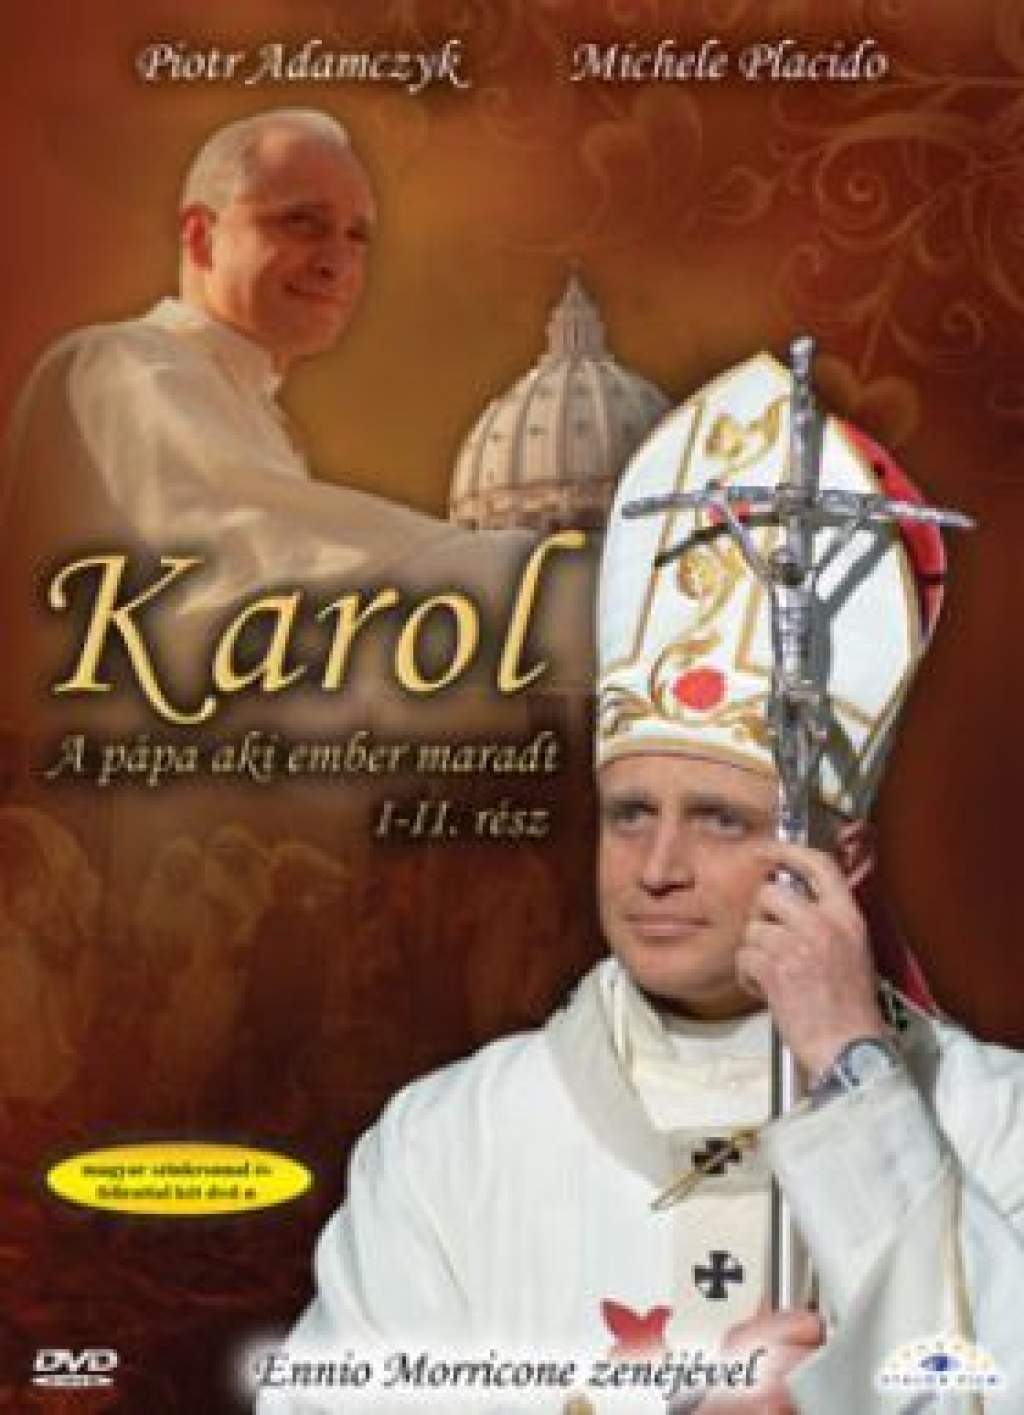  Megjelent a Karol - A pápa, aki ember maradt